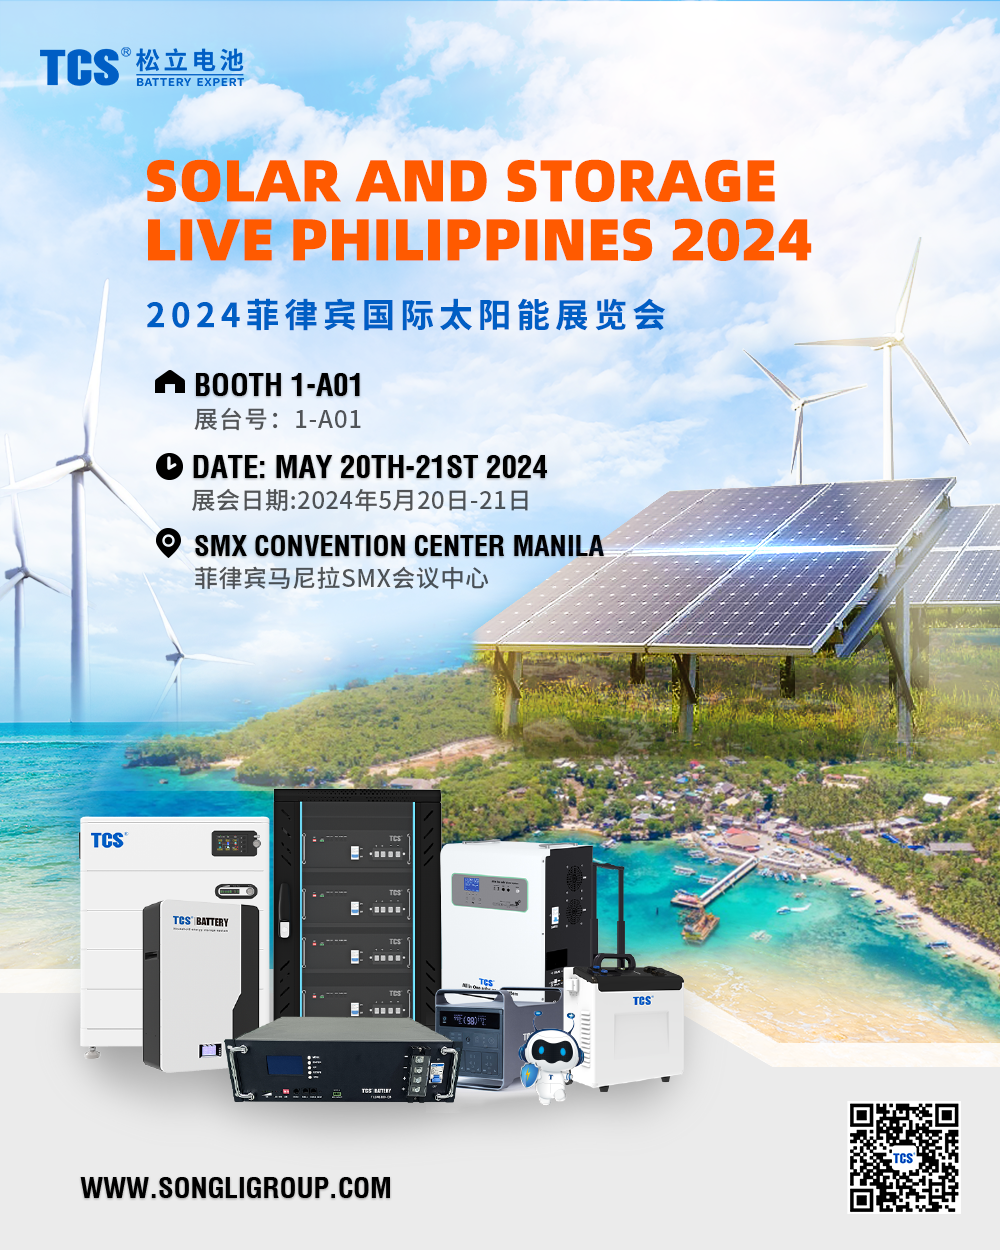 Solaris et Storage Live Philippines 2024